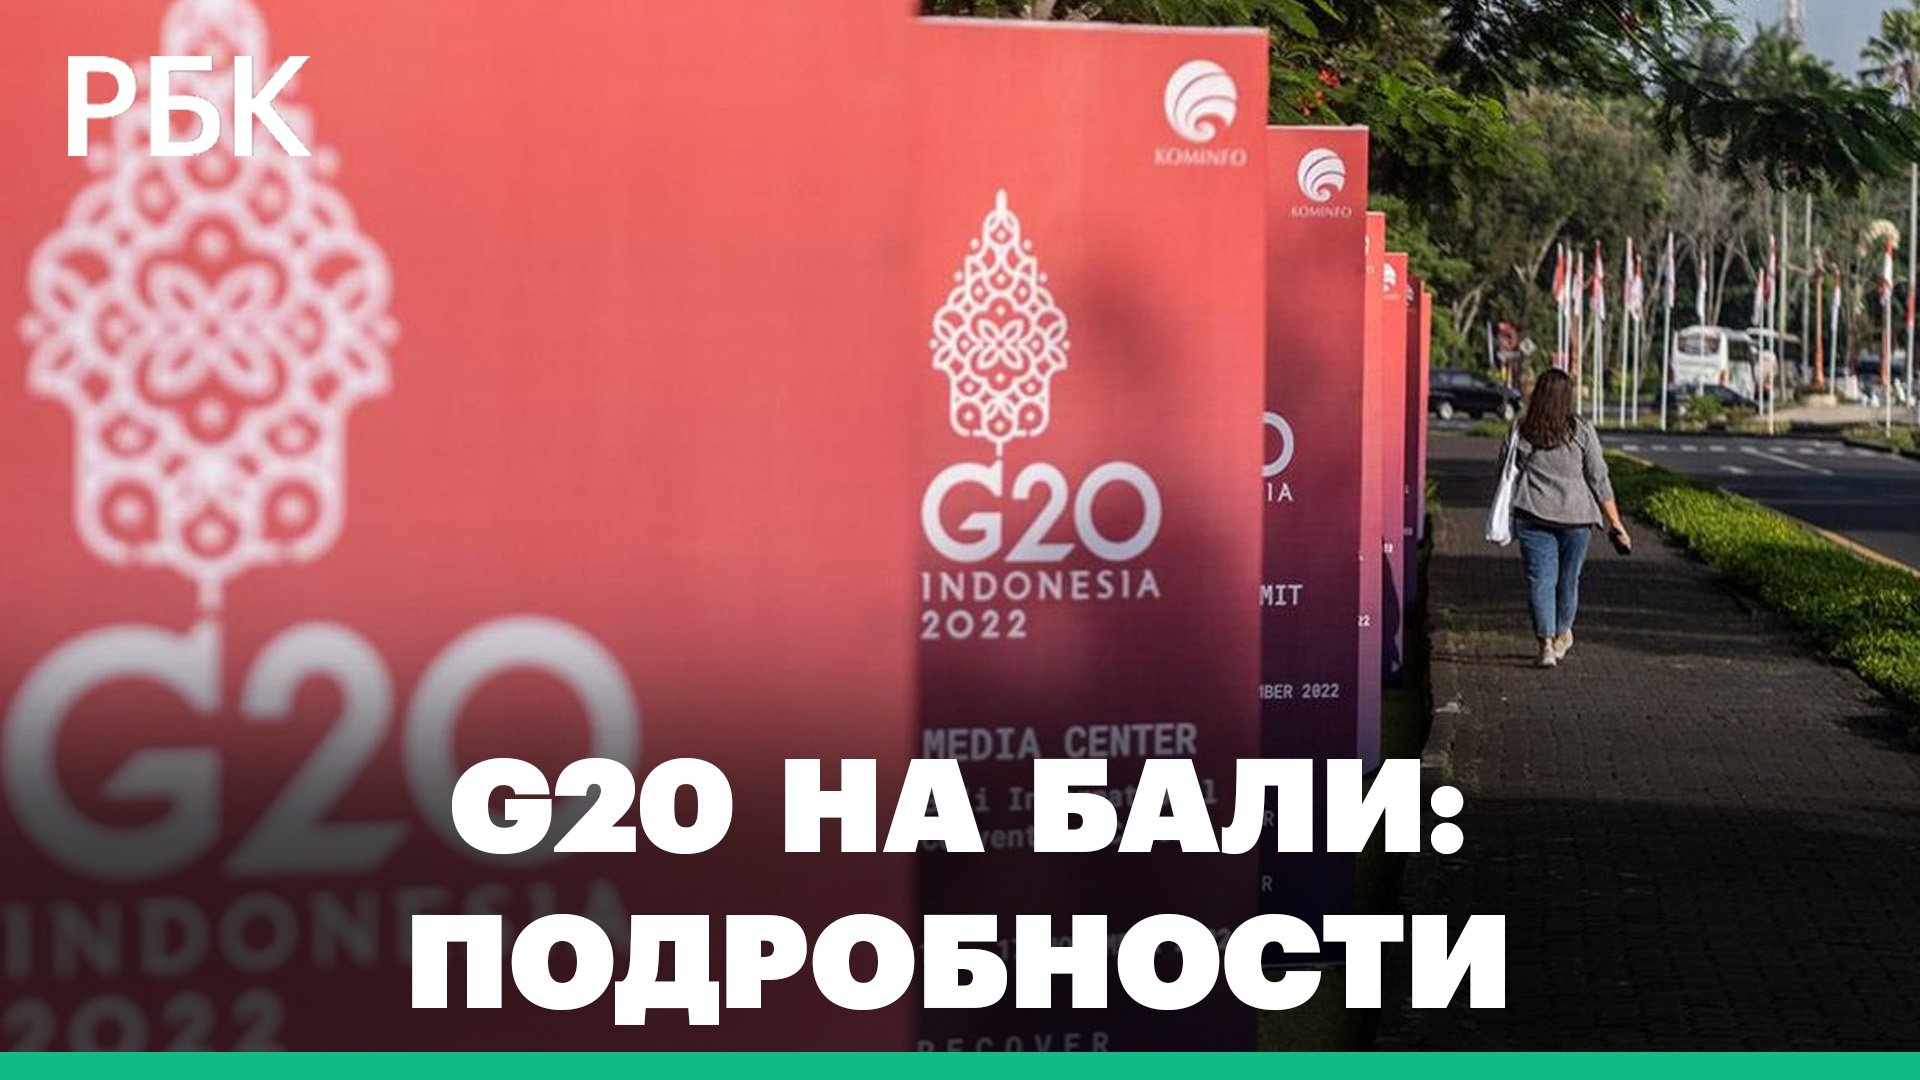 Чем запомнился день приезда гостей на саммит G20 на Бали